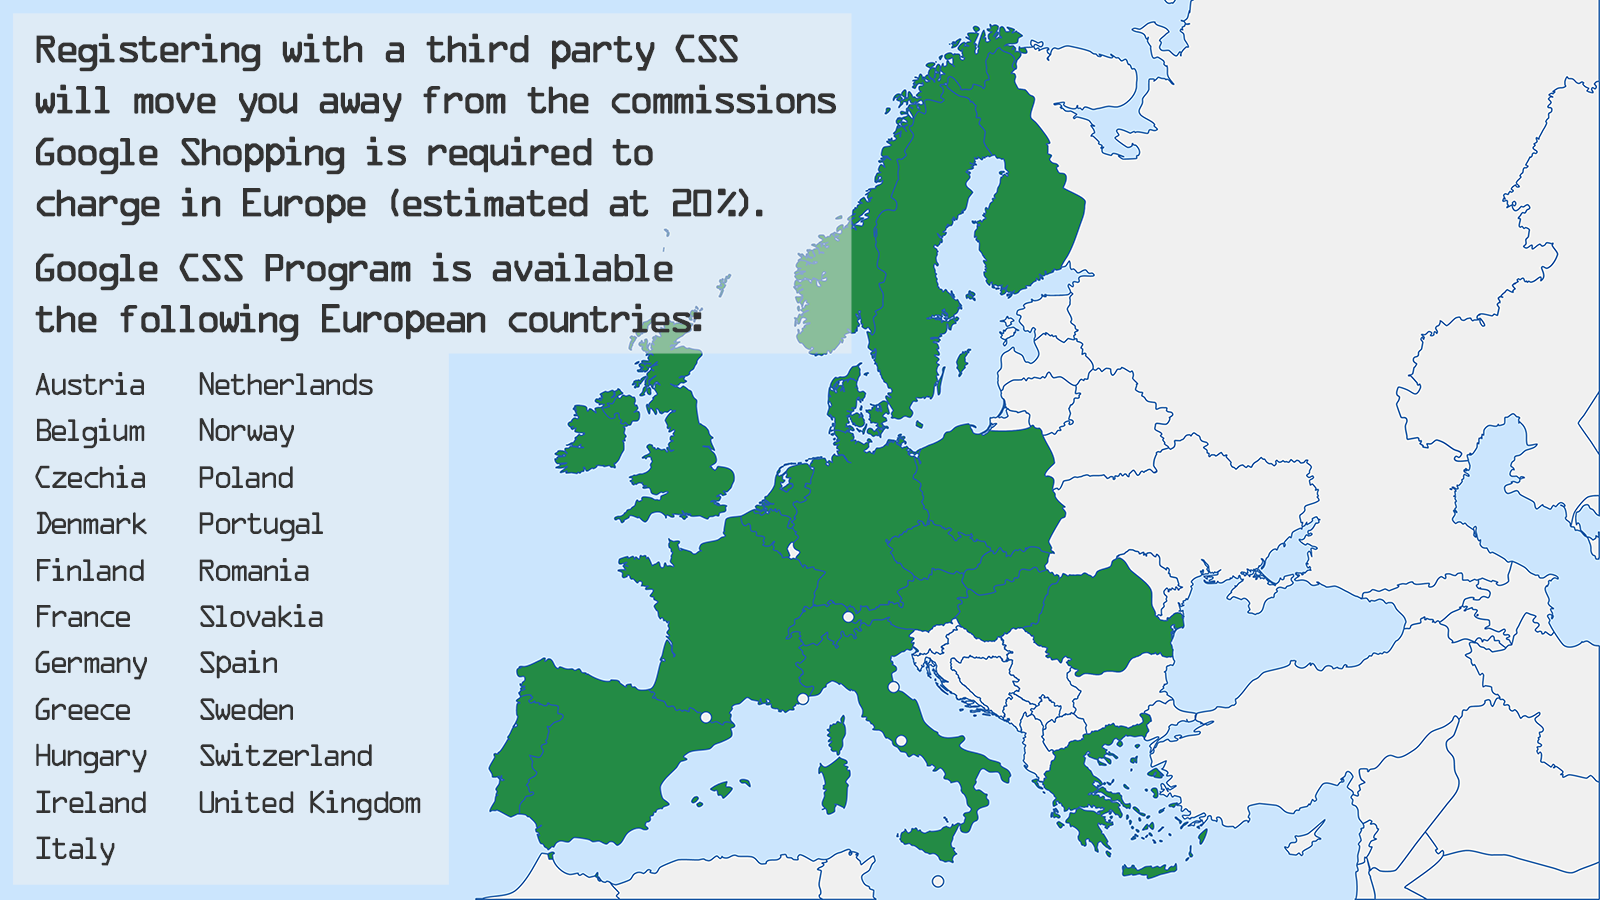 Google CSS Program er tilgængeligt i 21 europæiske lande